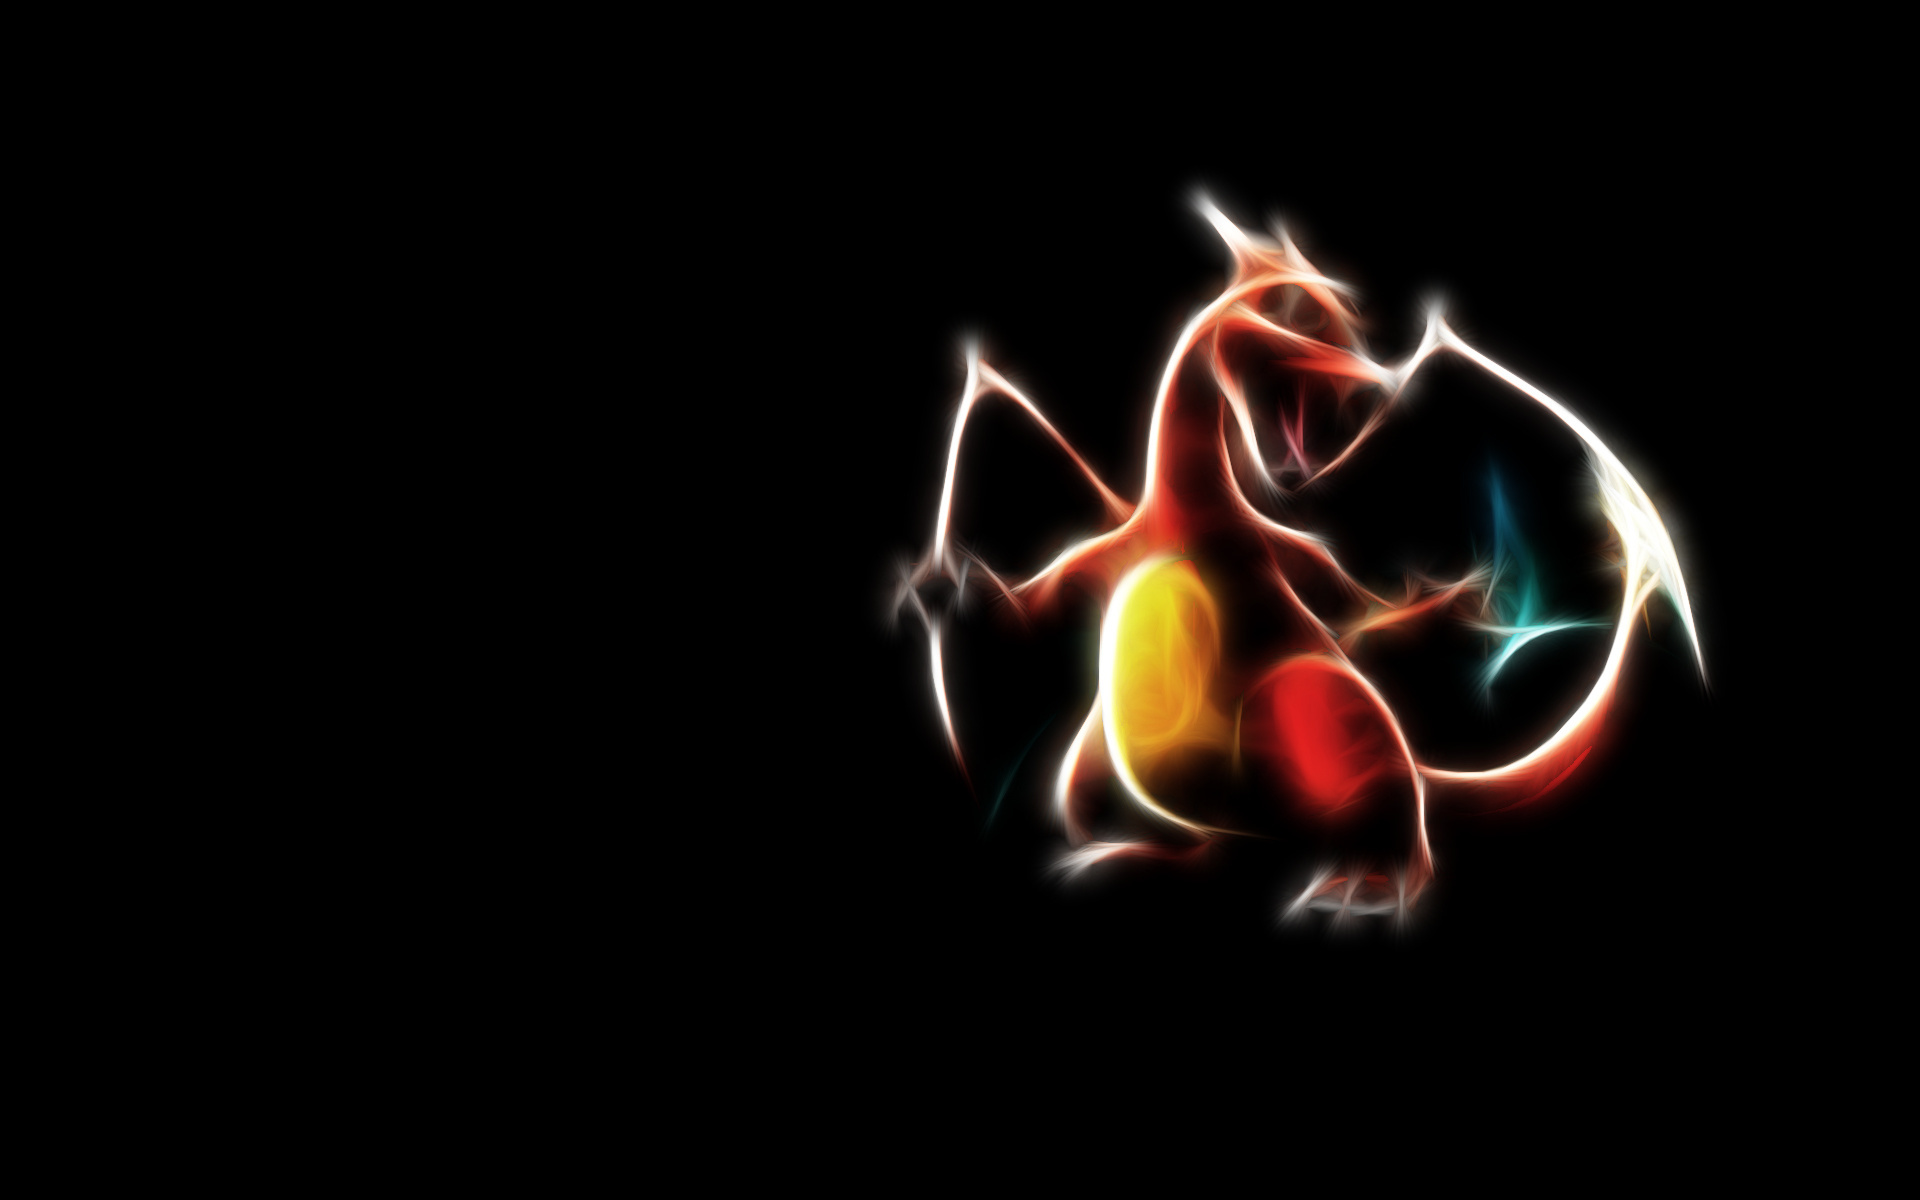 Pokemon Free Download Image Wallpaper, Size 1920x1200